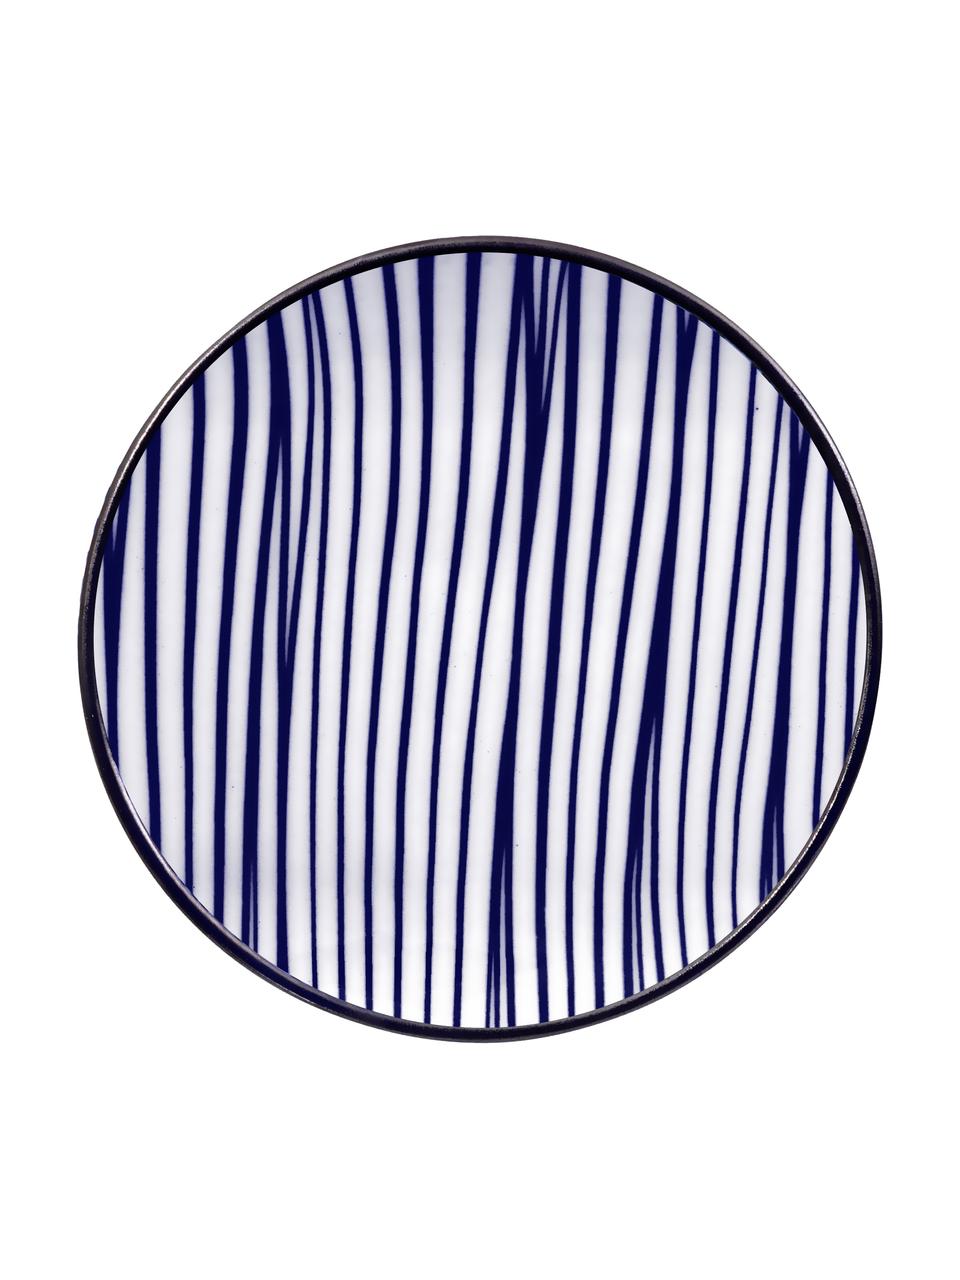 Servizio da tavola in porcellana fatto a mano con bacchette Nippon, 2 persone (6 pz), Blu, bianco, legno scuro, Set in varie misure